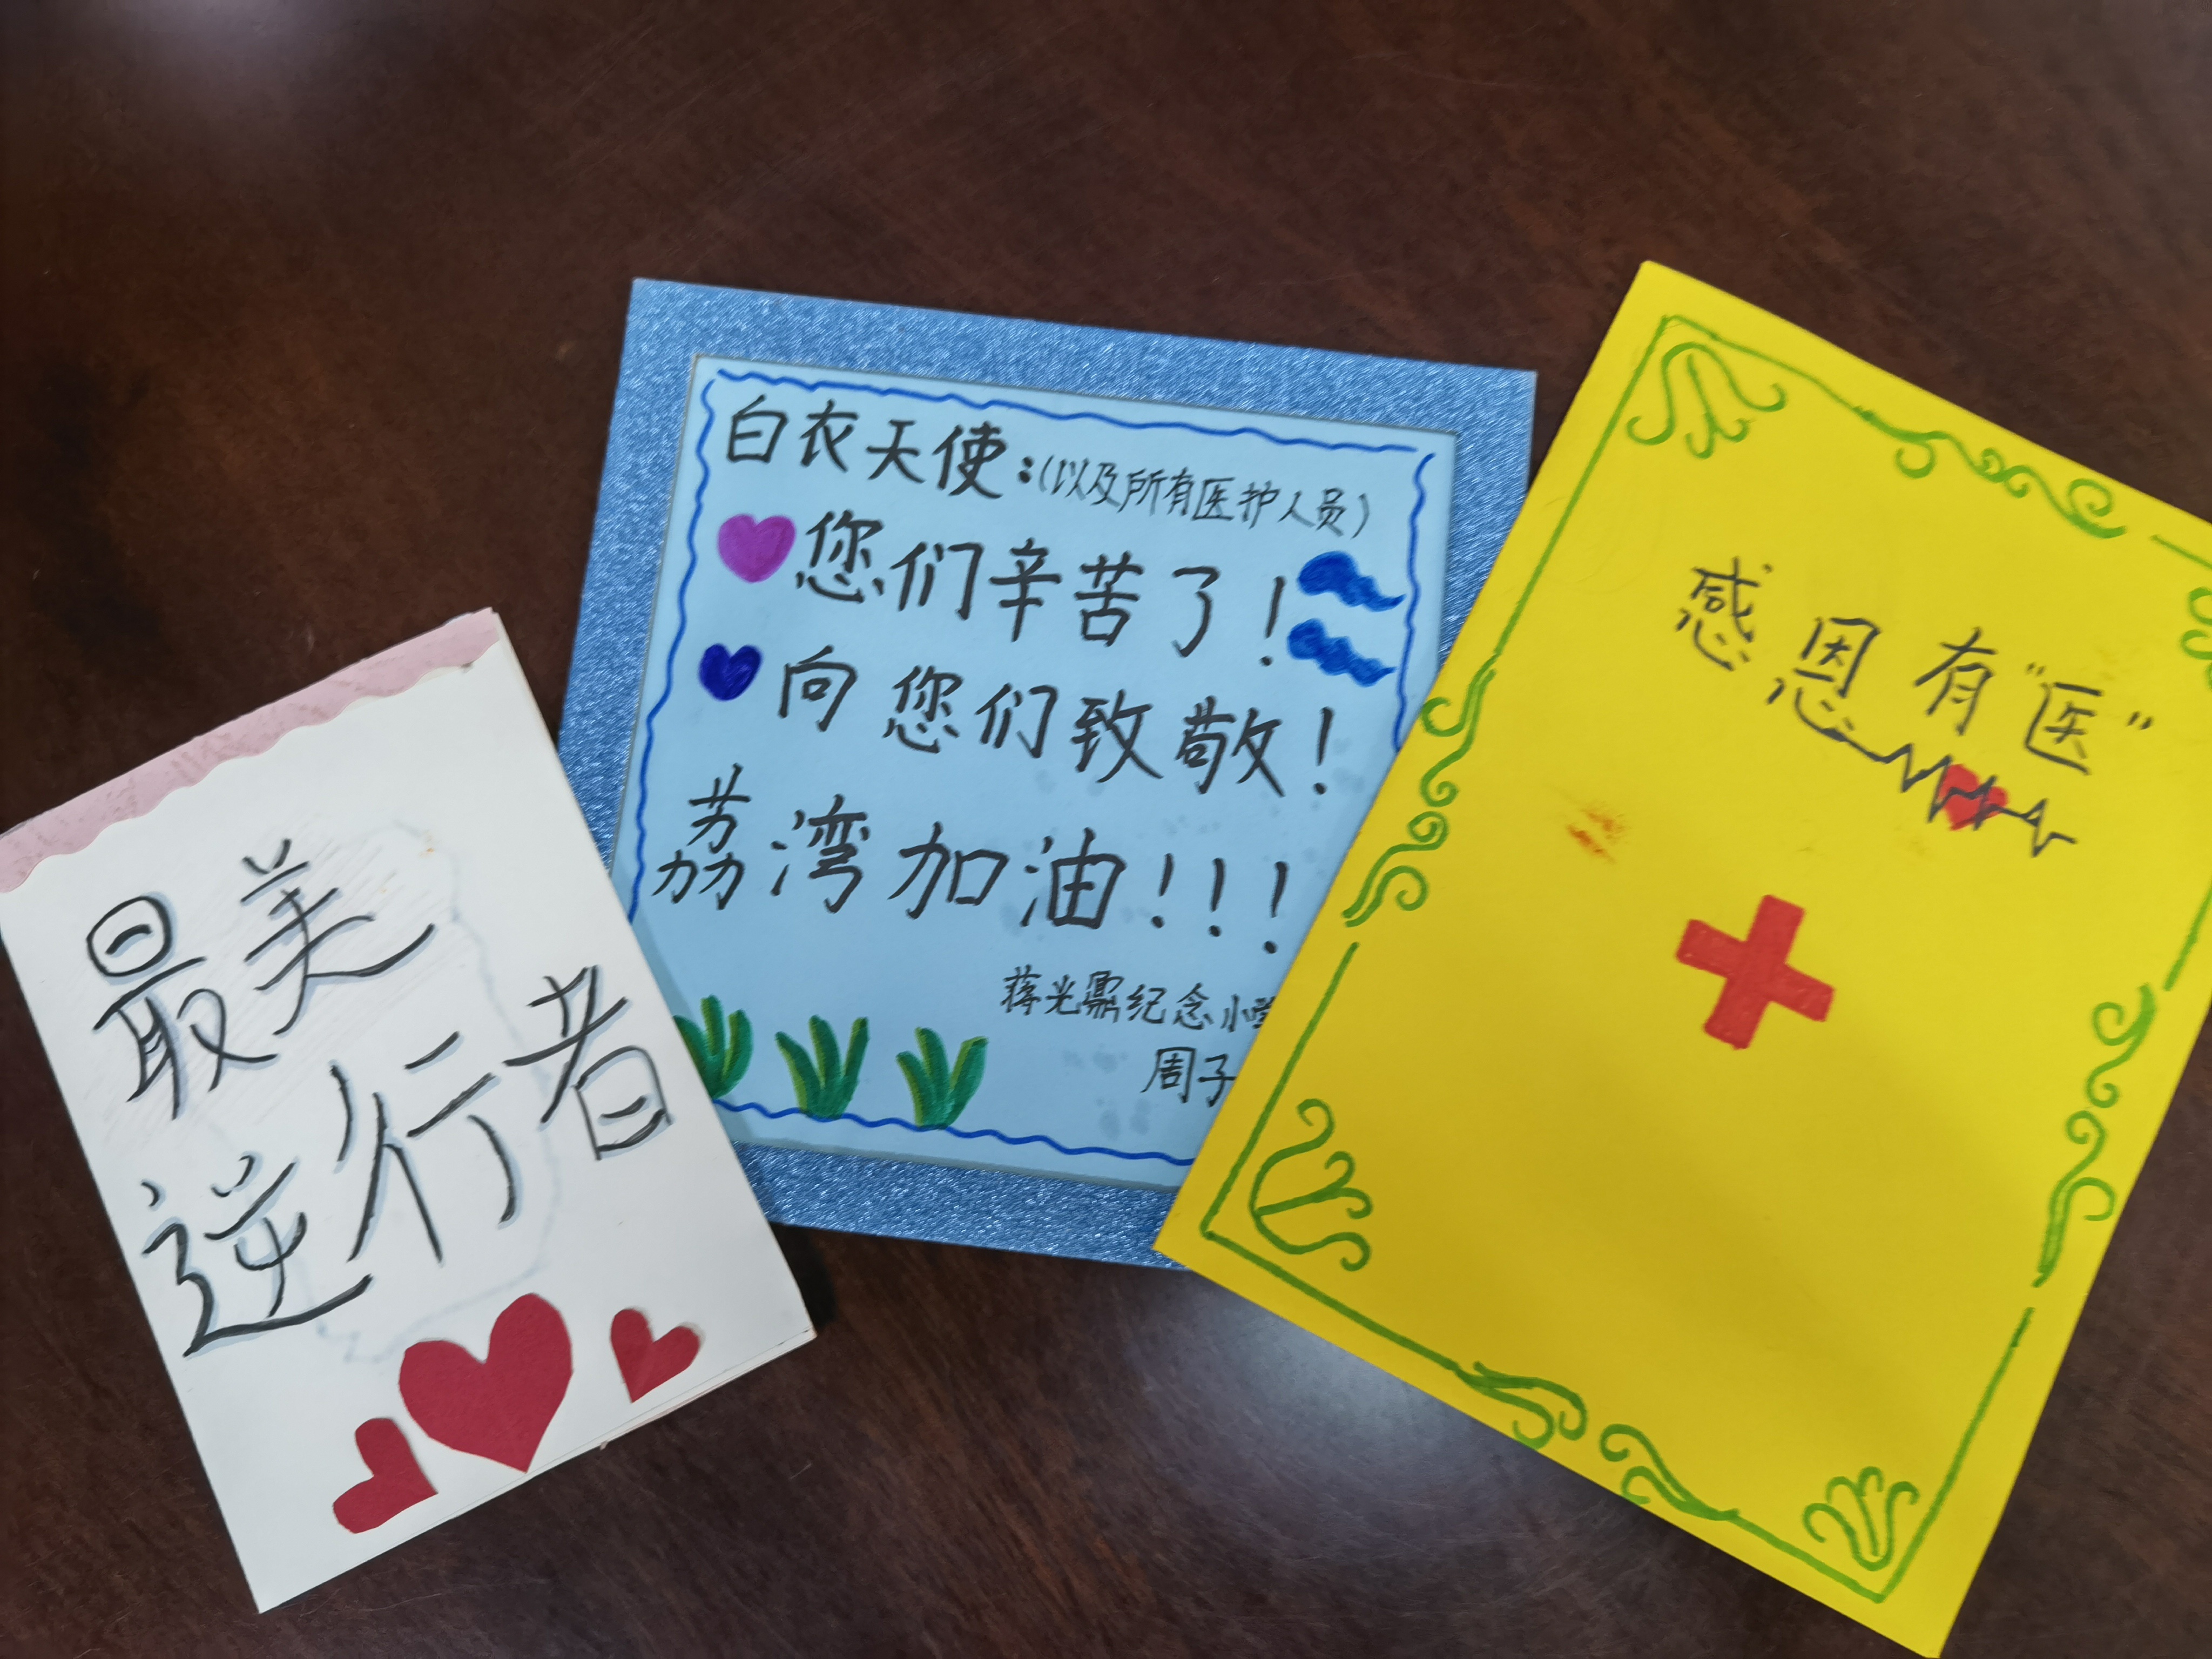 最温暖的儿童节礼物广州小学生手绘贺卡赠医护